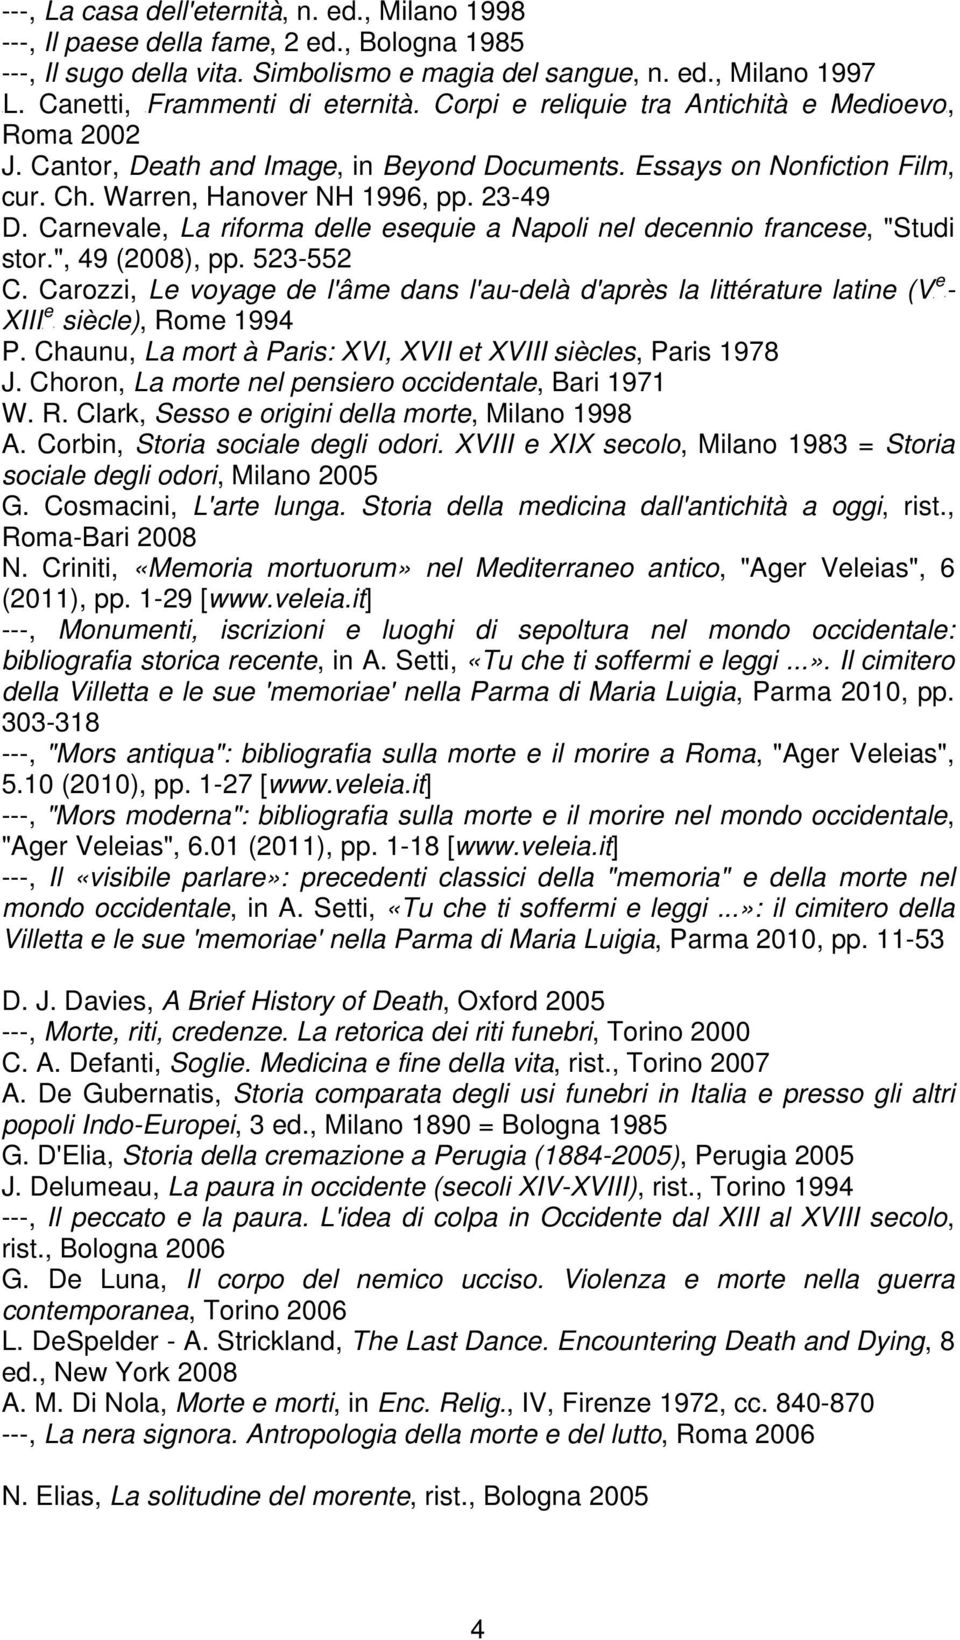 23-49 D. Carnevale, La riforma delle esequie a Napoli nel decennio francese, "Studi stor.", 49 (2008), pp. 523-552 e C.